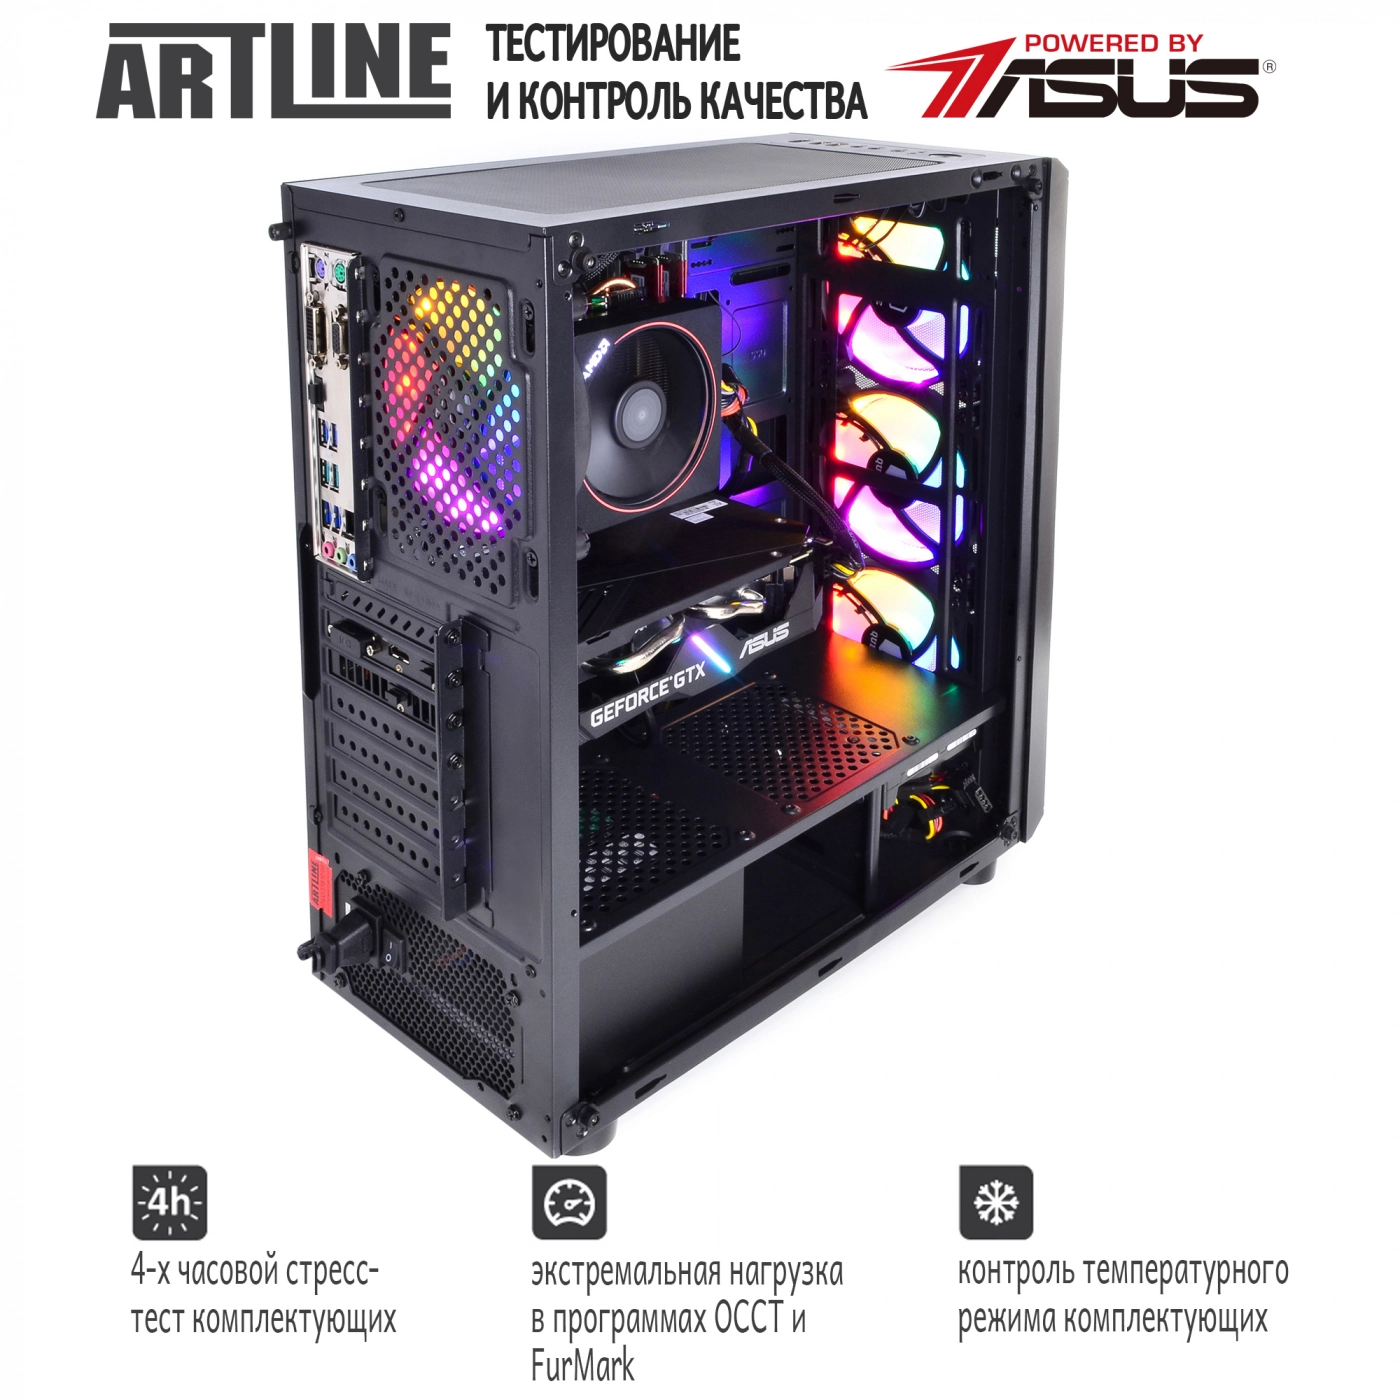 Купить Компьютер ARTLINE Gaming X43v15 - фото 6